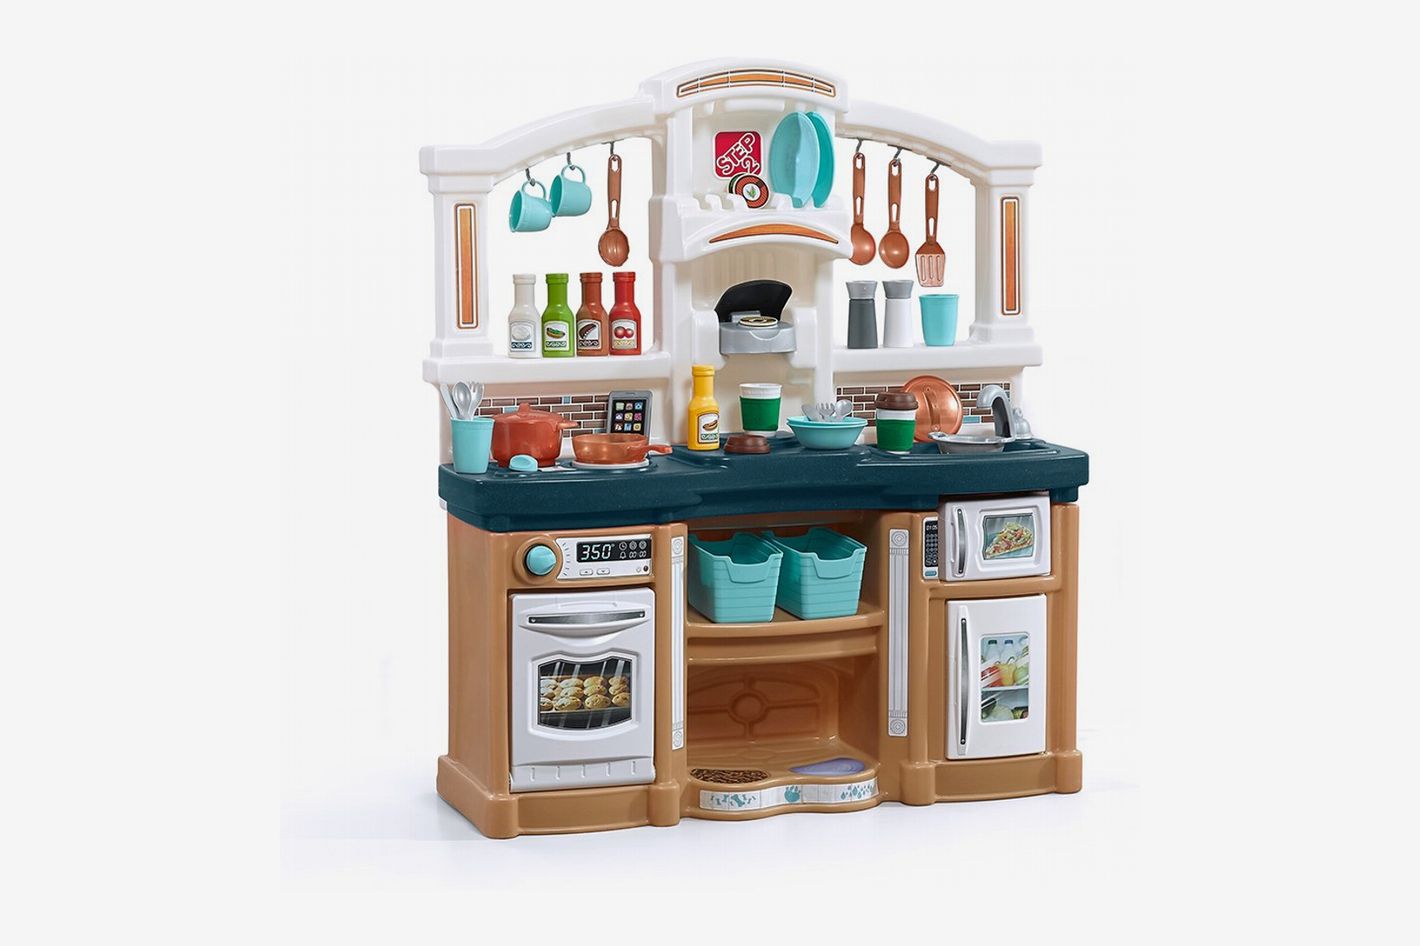 10 Best Toy Kitchen Sets: 2019